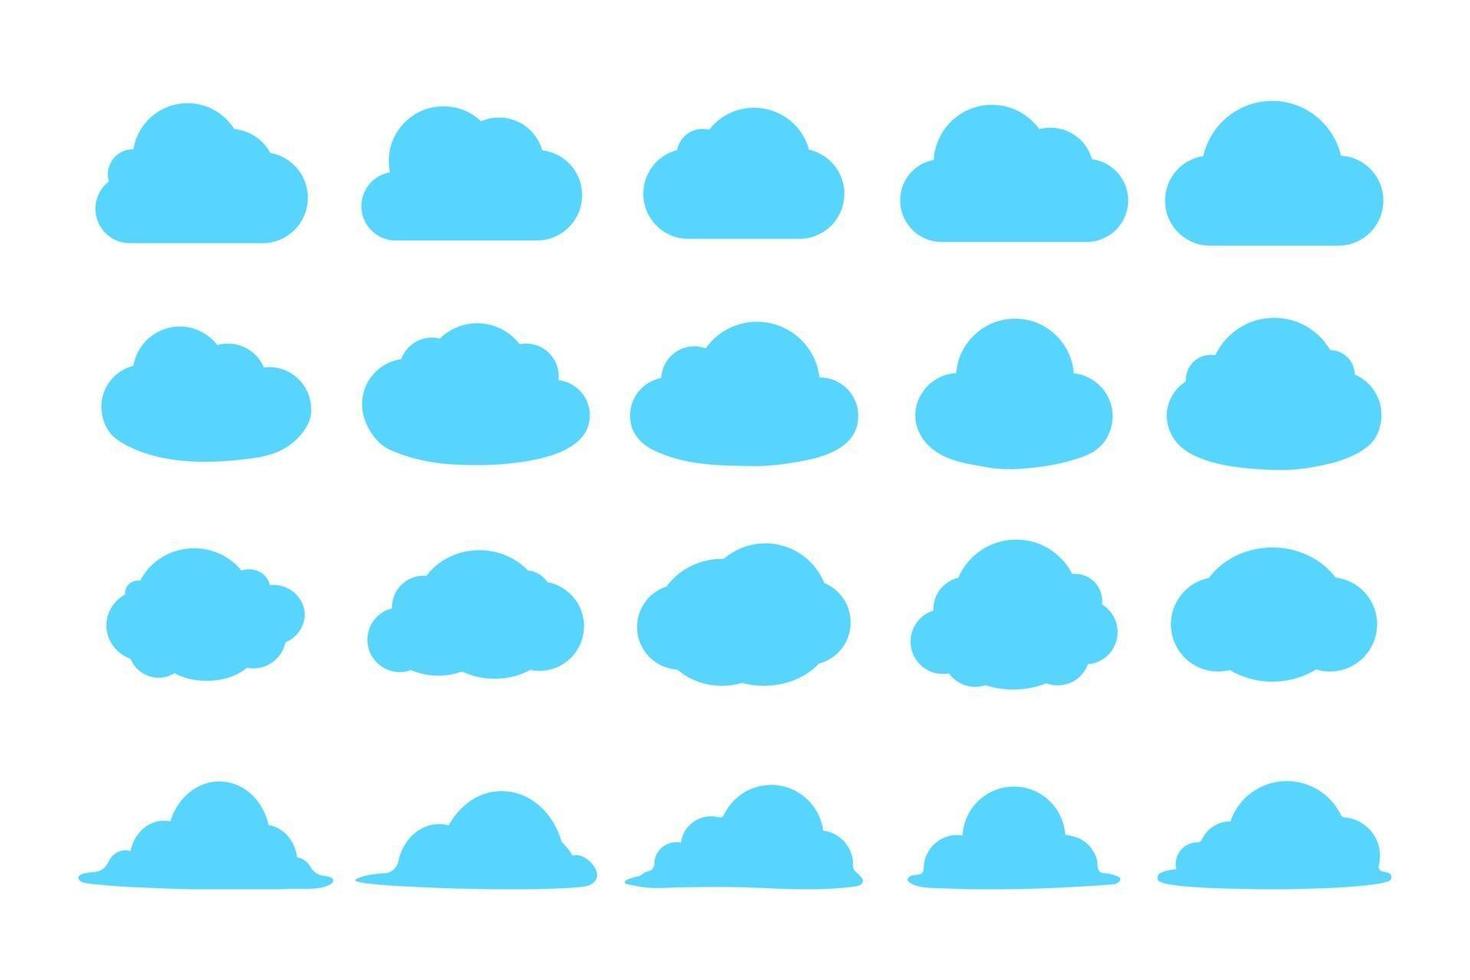 semplice cloud set design vettoriale isolato su sfondo